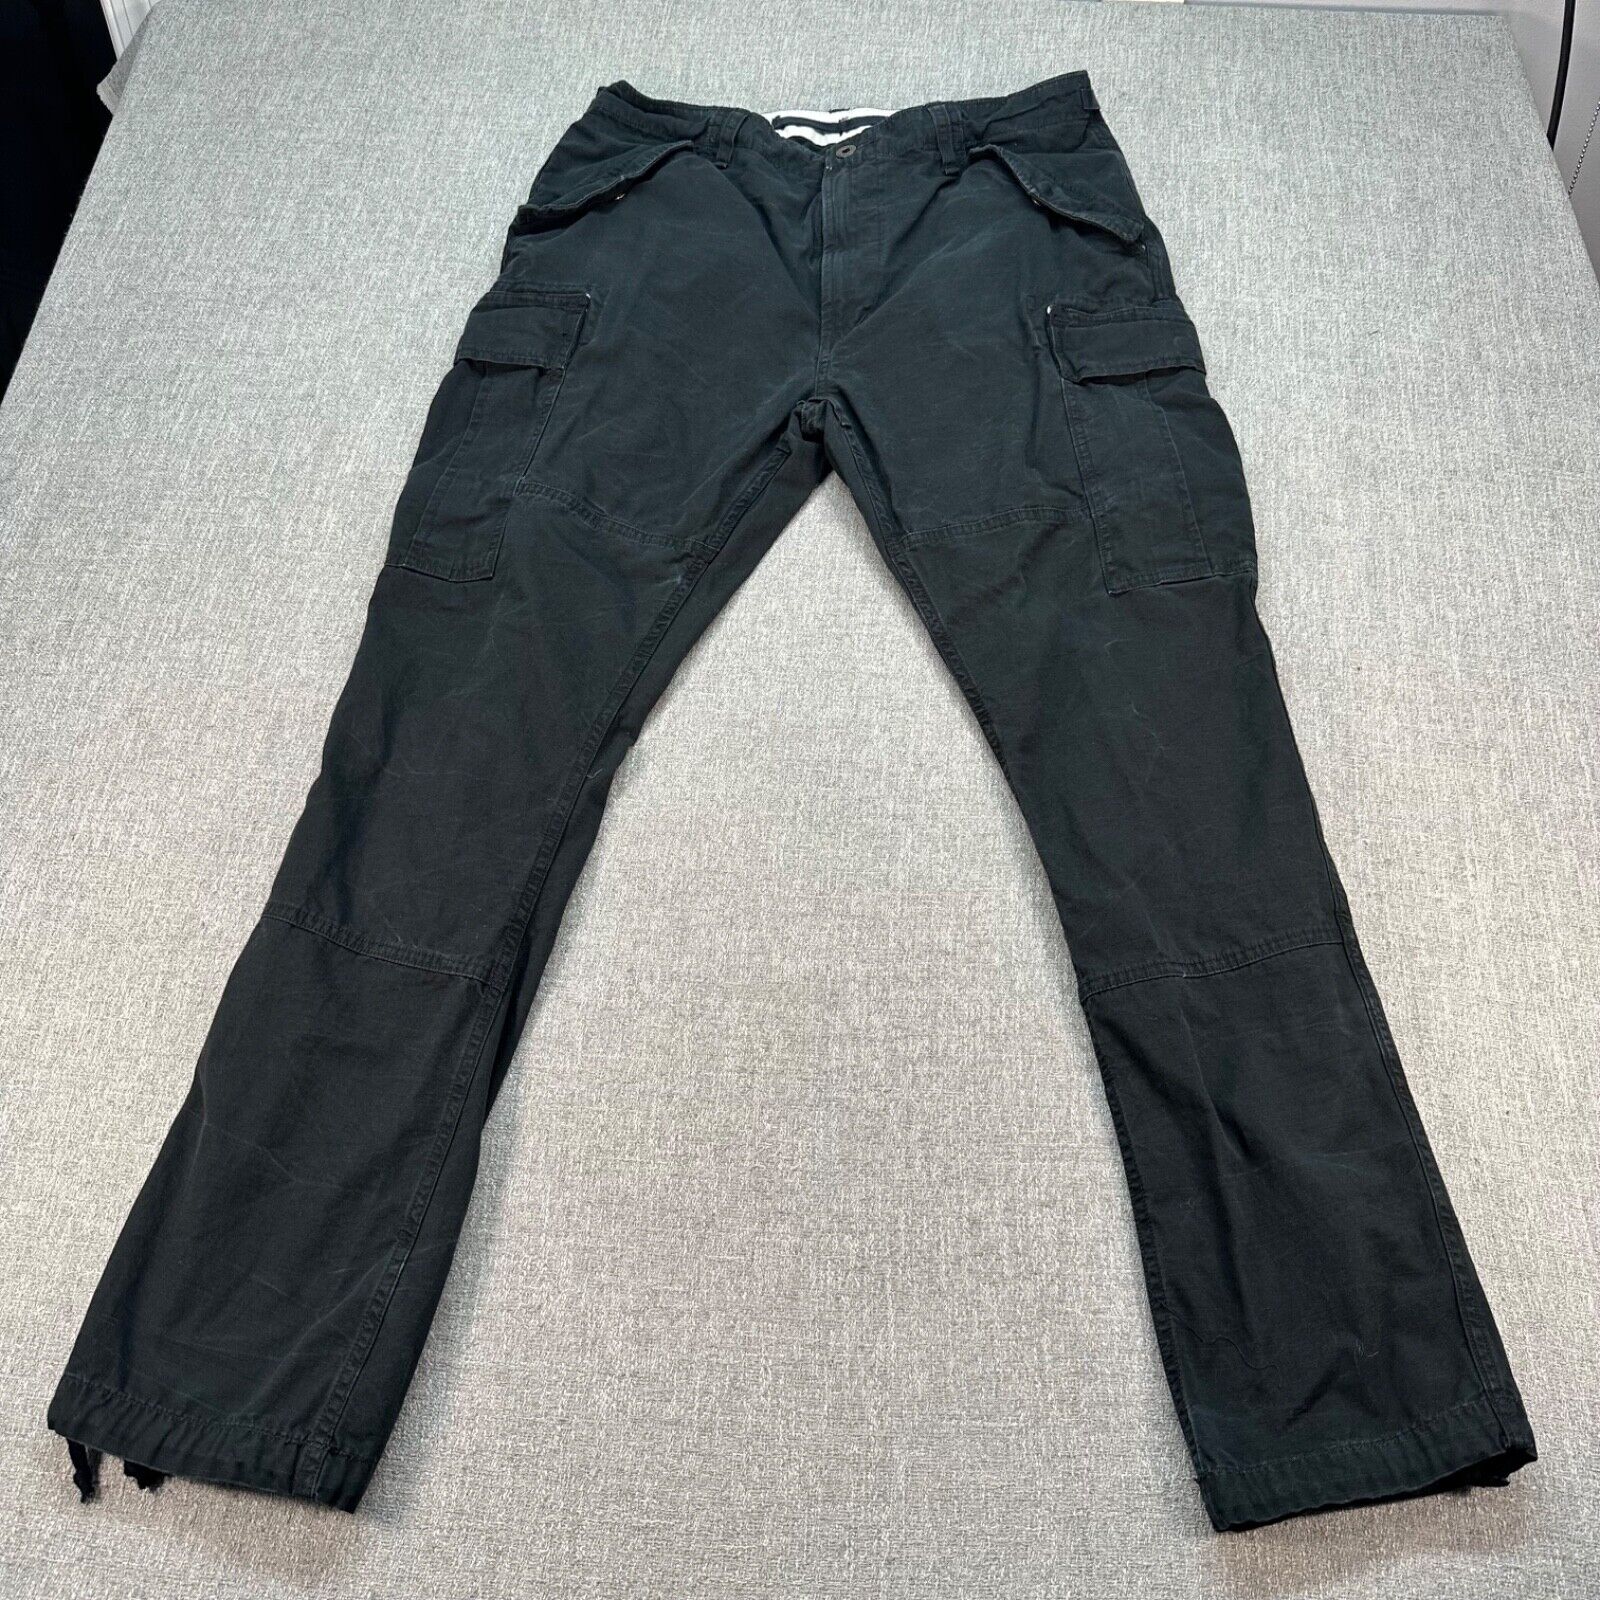 VTG Ralph Lauren Surplus Division Cargo Pants Mens 34x30 Black Utility Parachute